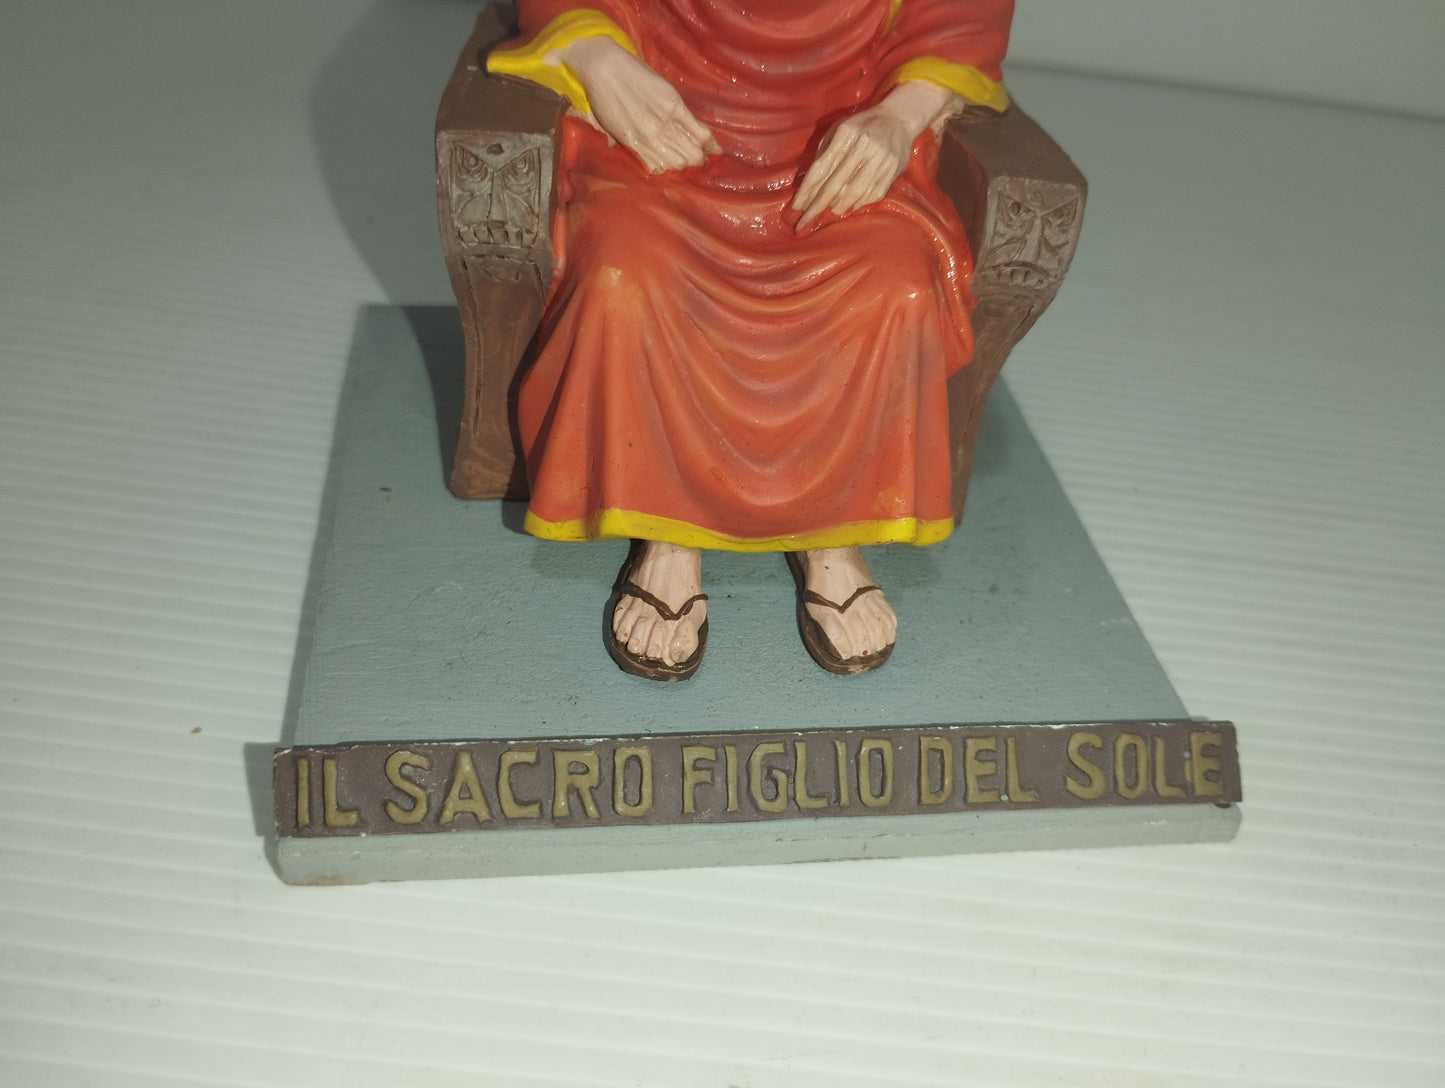 Statua Il Sacro Figlio Del Sole In Resina
Altezza cm 12 circa